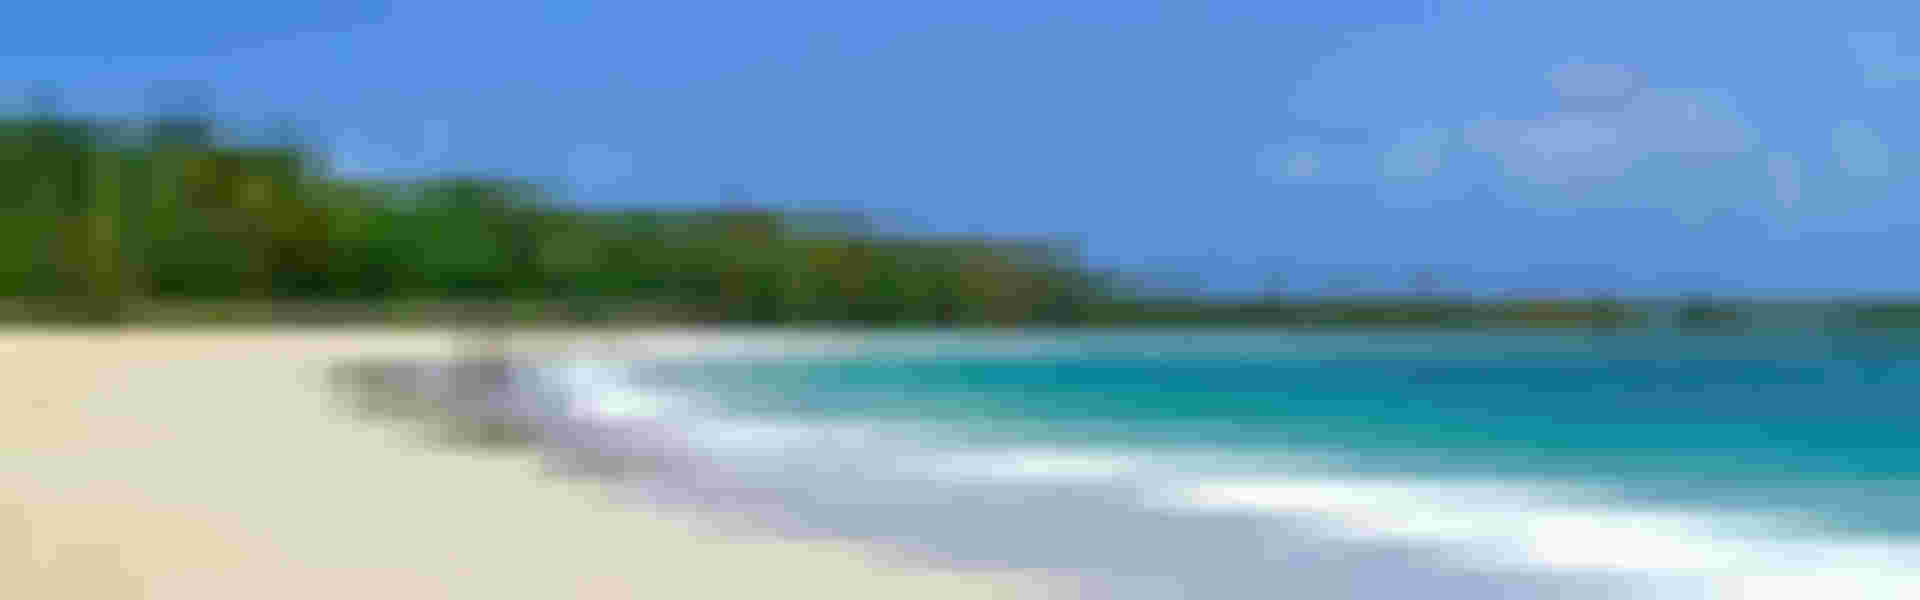 Location de vacances, airbnb & maisons à Antigua-et-Barbuda